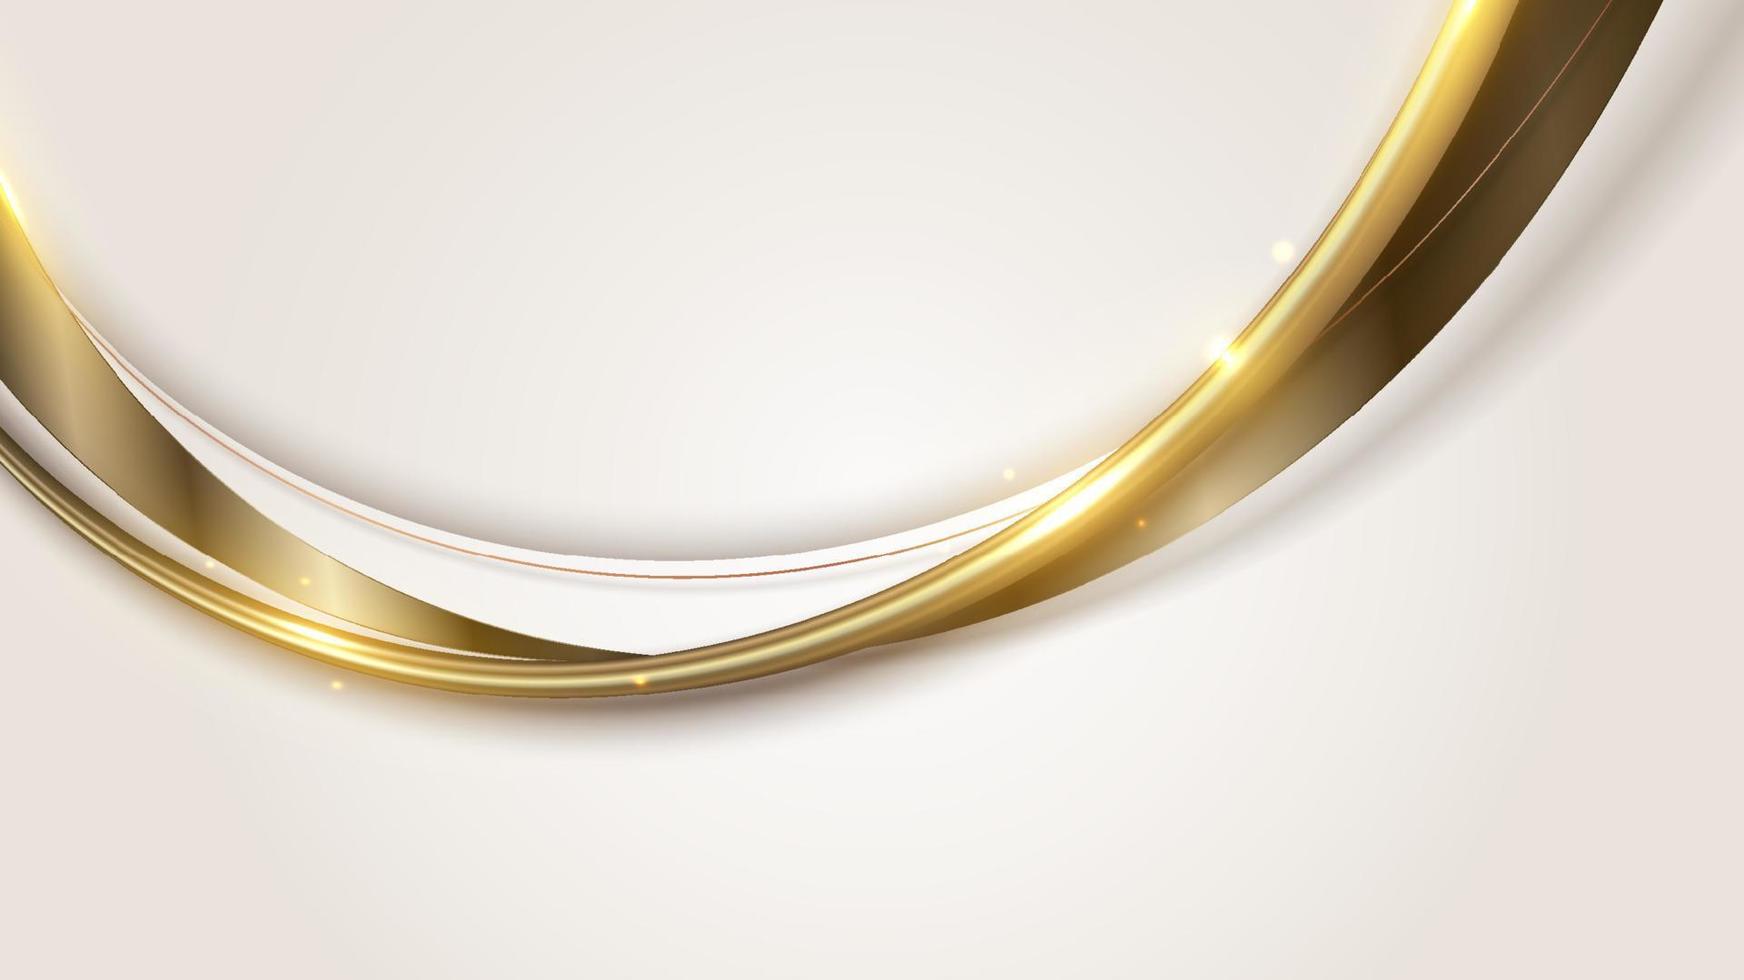 modello astratto elegante forma curva bianca e marrone con linee curve dorate 3d arrotondate e illuminazione che scintilla su sfondo pulito vettore